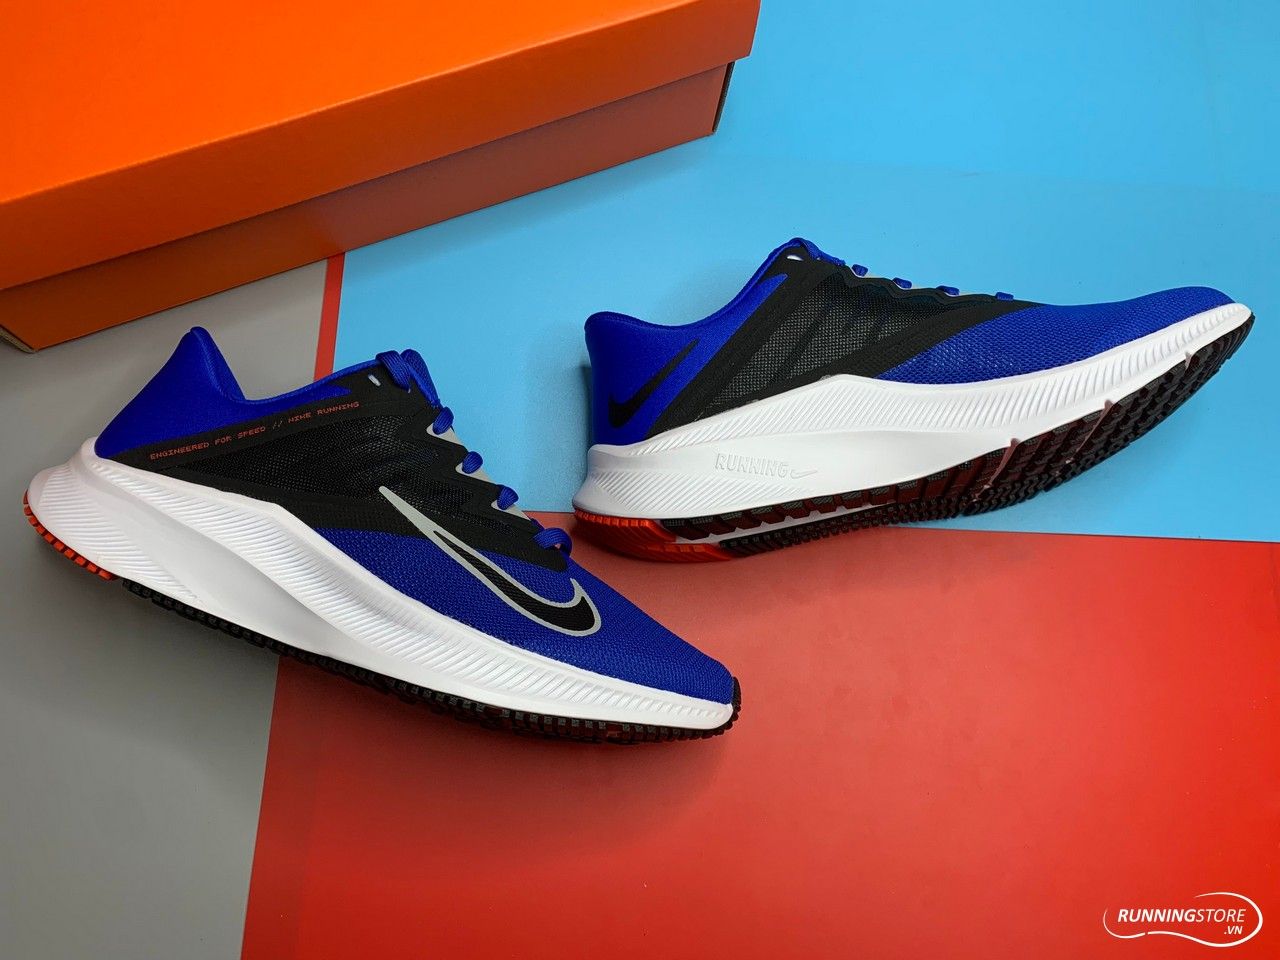 Giày Nike Quest 3 – Racer Blue/Lt Smoke Grey/Smoke – CD0230-400 màu xanh, đen